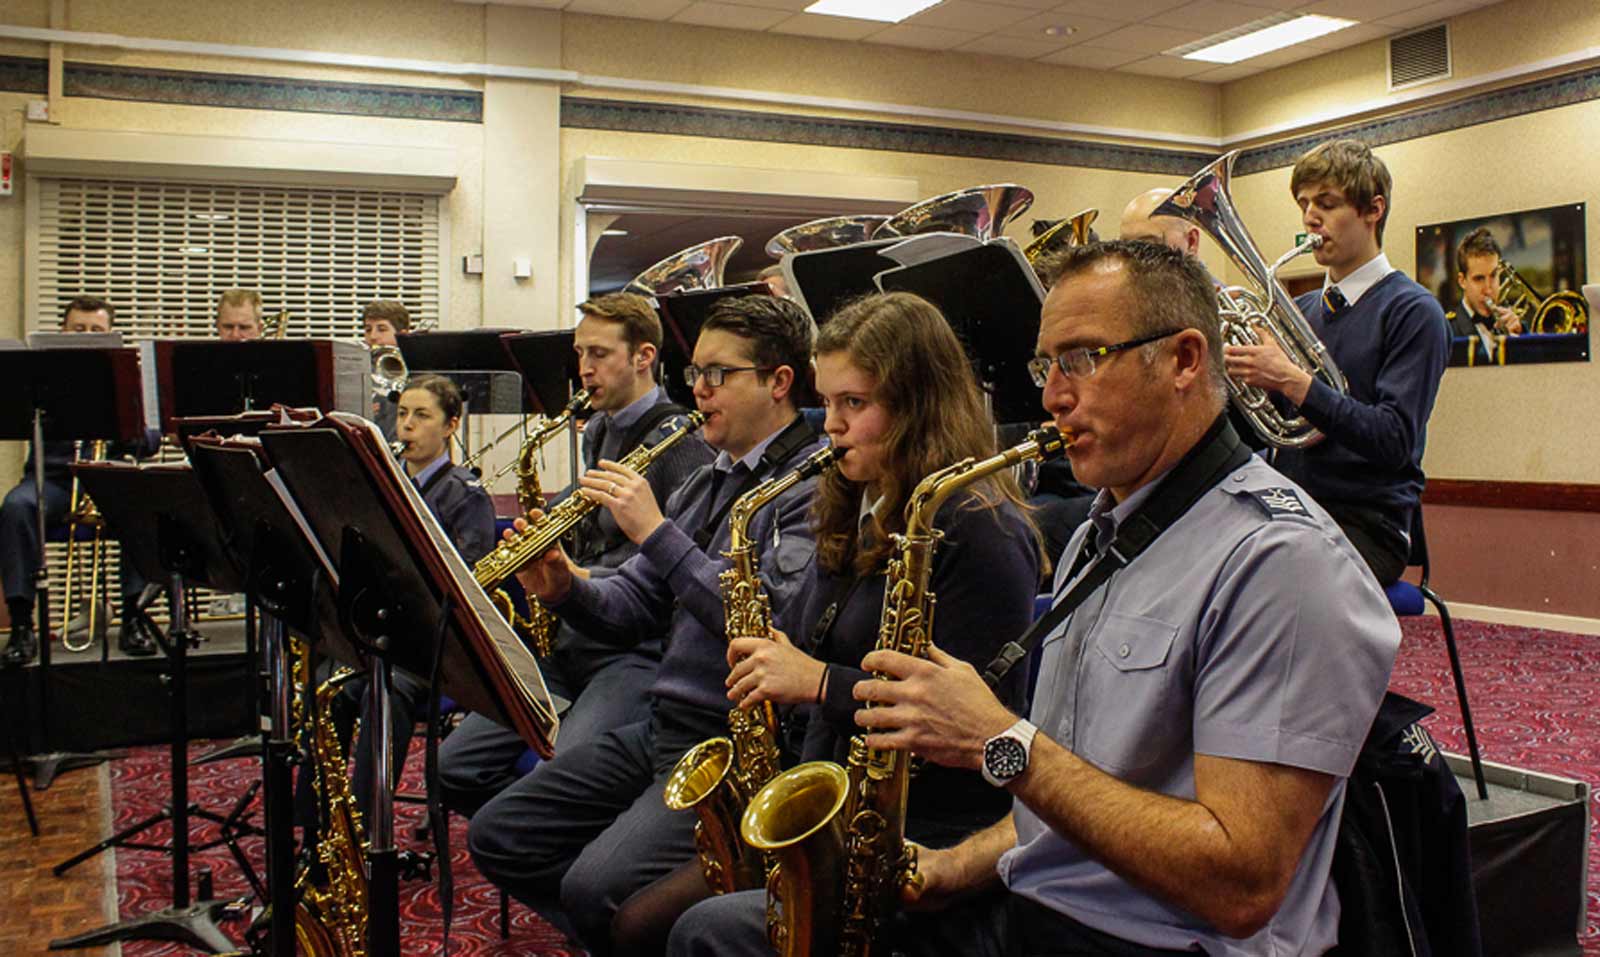 The RAF Band